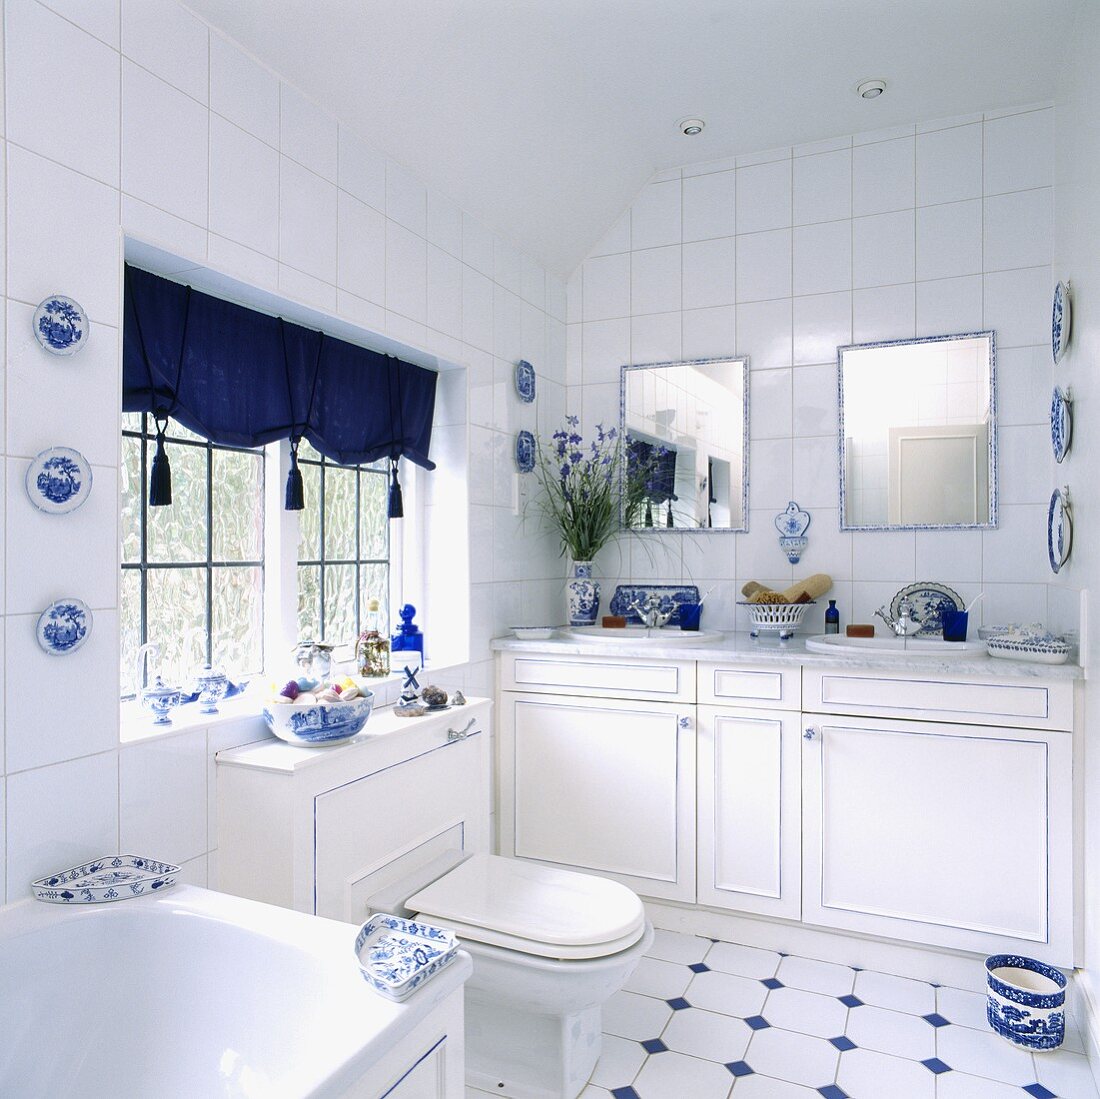 Zwei Waschbecken mit jeweils einen kleinen Spiegel darüber richten das weiße Badezimmer ein, das durch blaue Farbakzente aufgepeppt wird